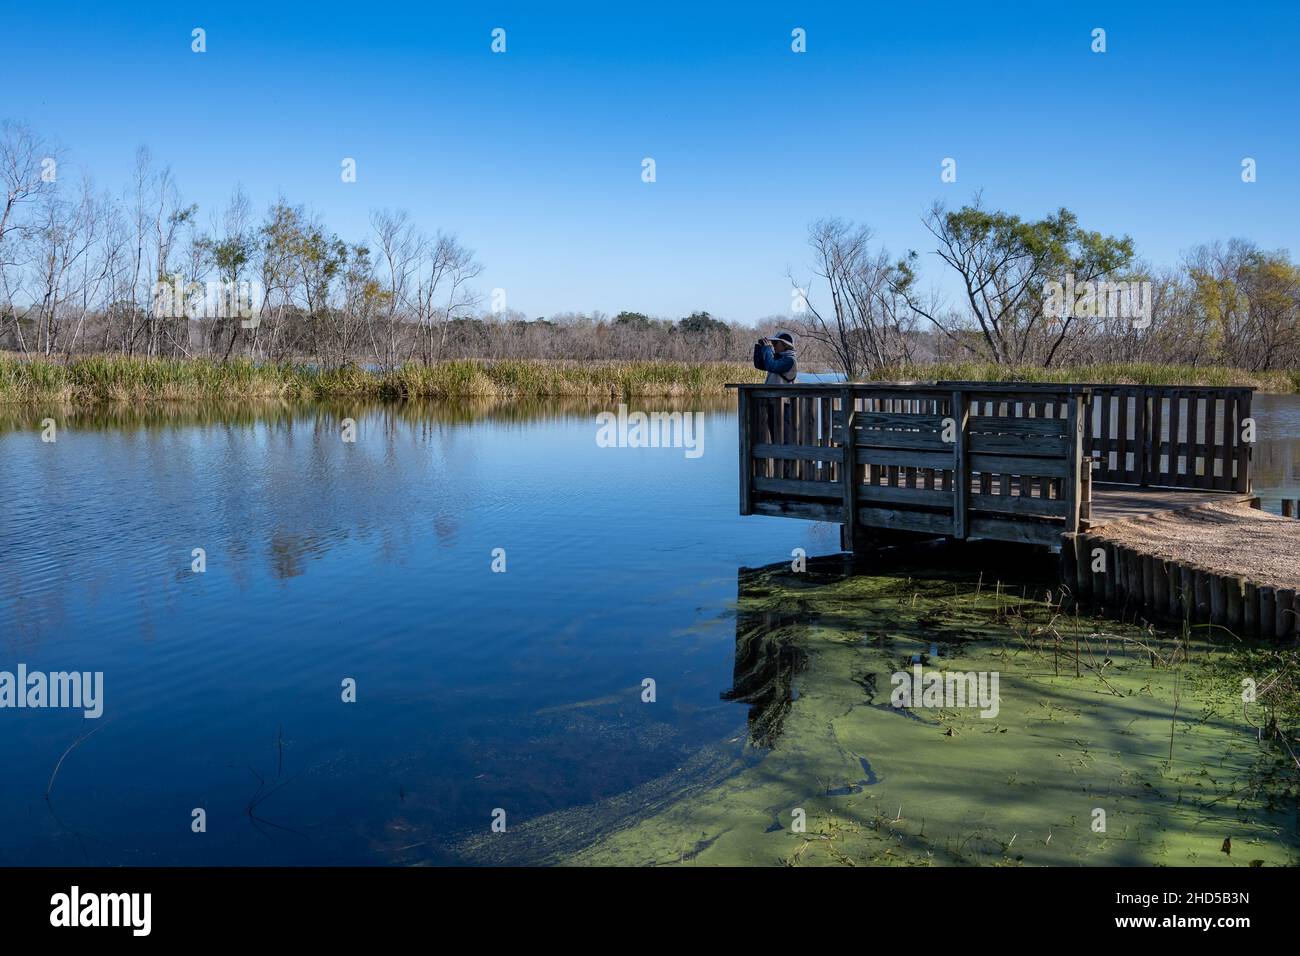 Un observador de aves en busca de aves en una terraza de madera junto al lago. Parque Estatal Brazos Bend. Needville, Texas, Estados Unidos. Foto de stock